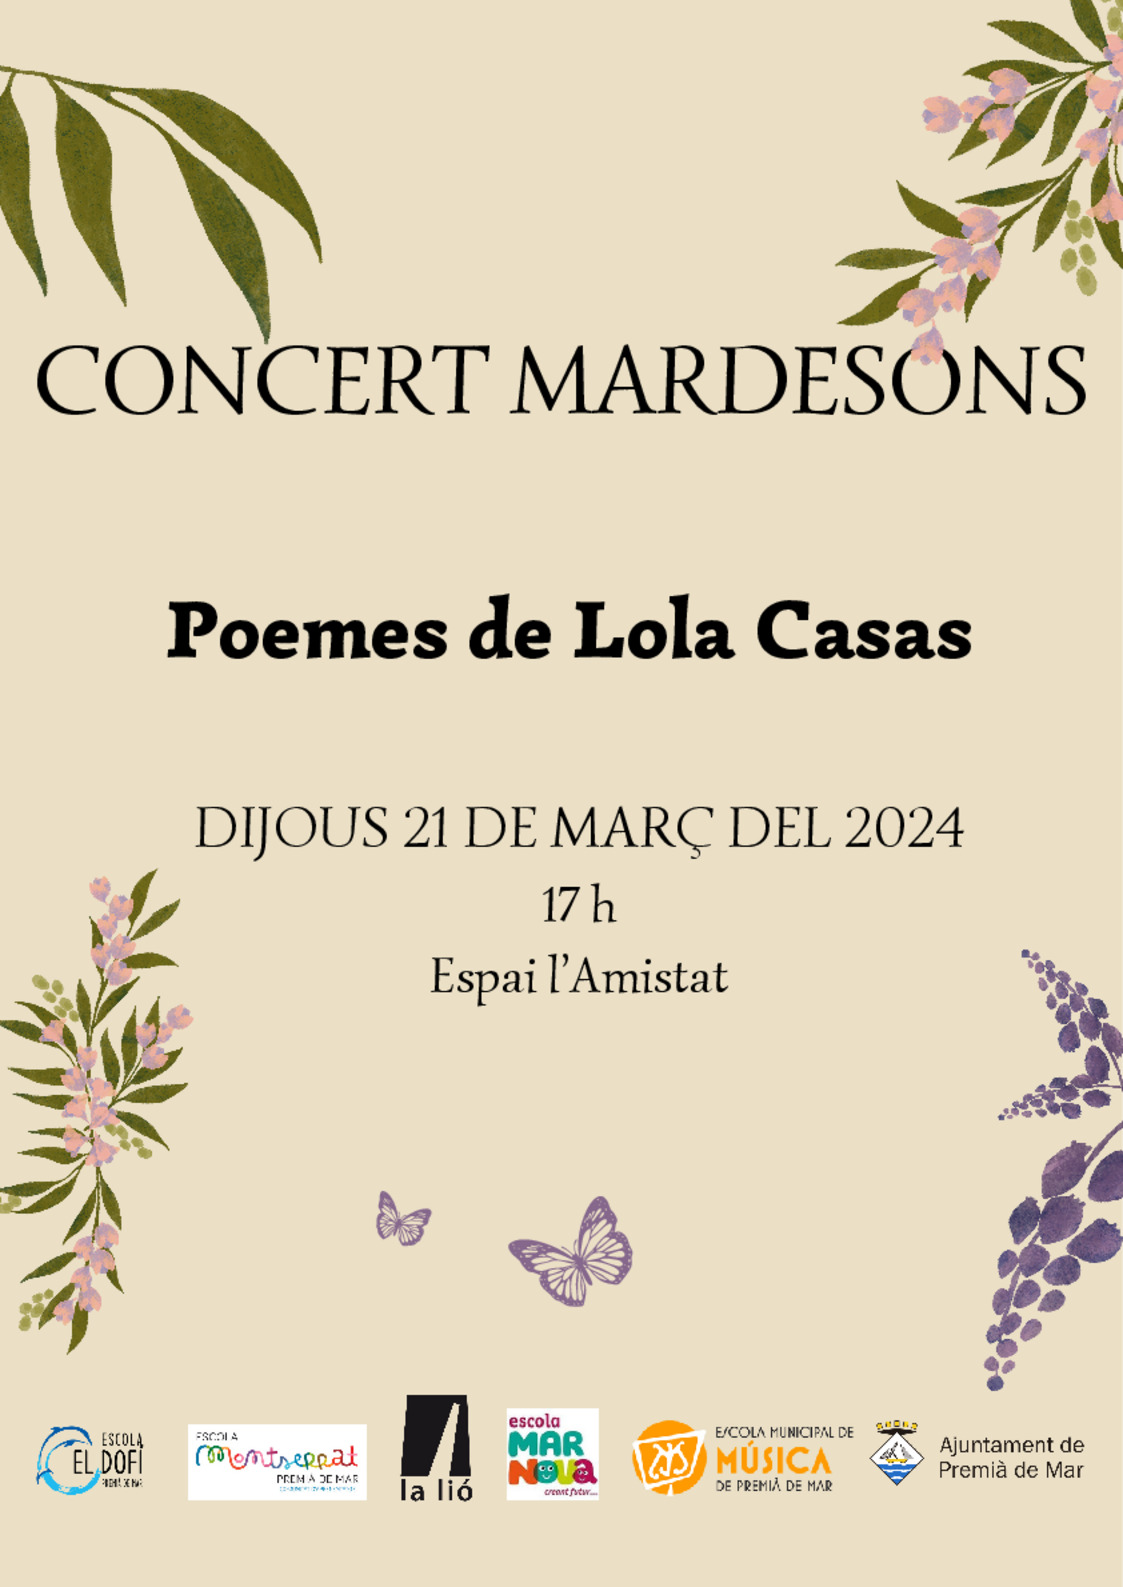 Concert Mardesons amb poemes de Lola Casas